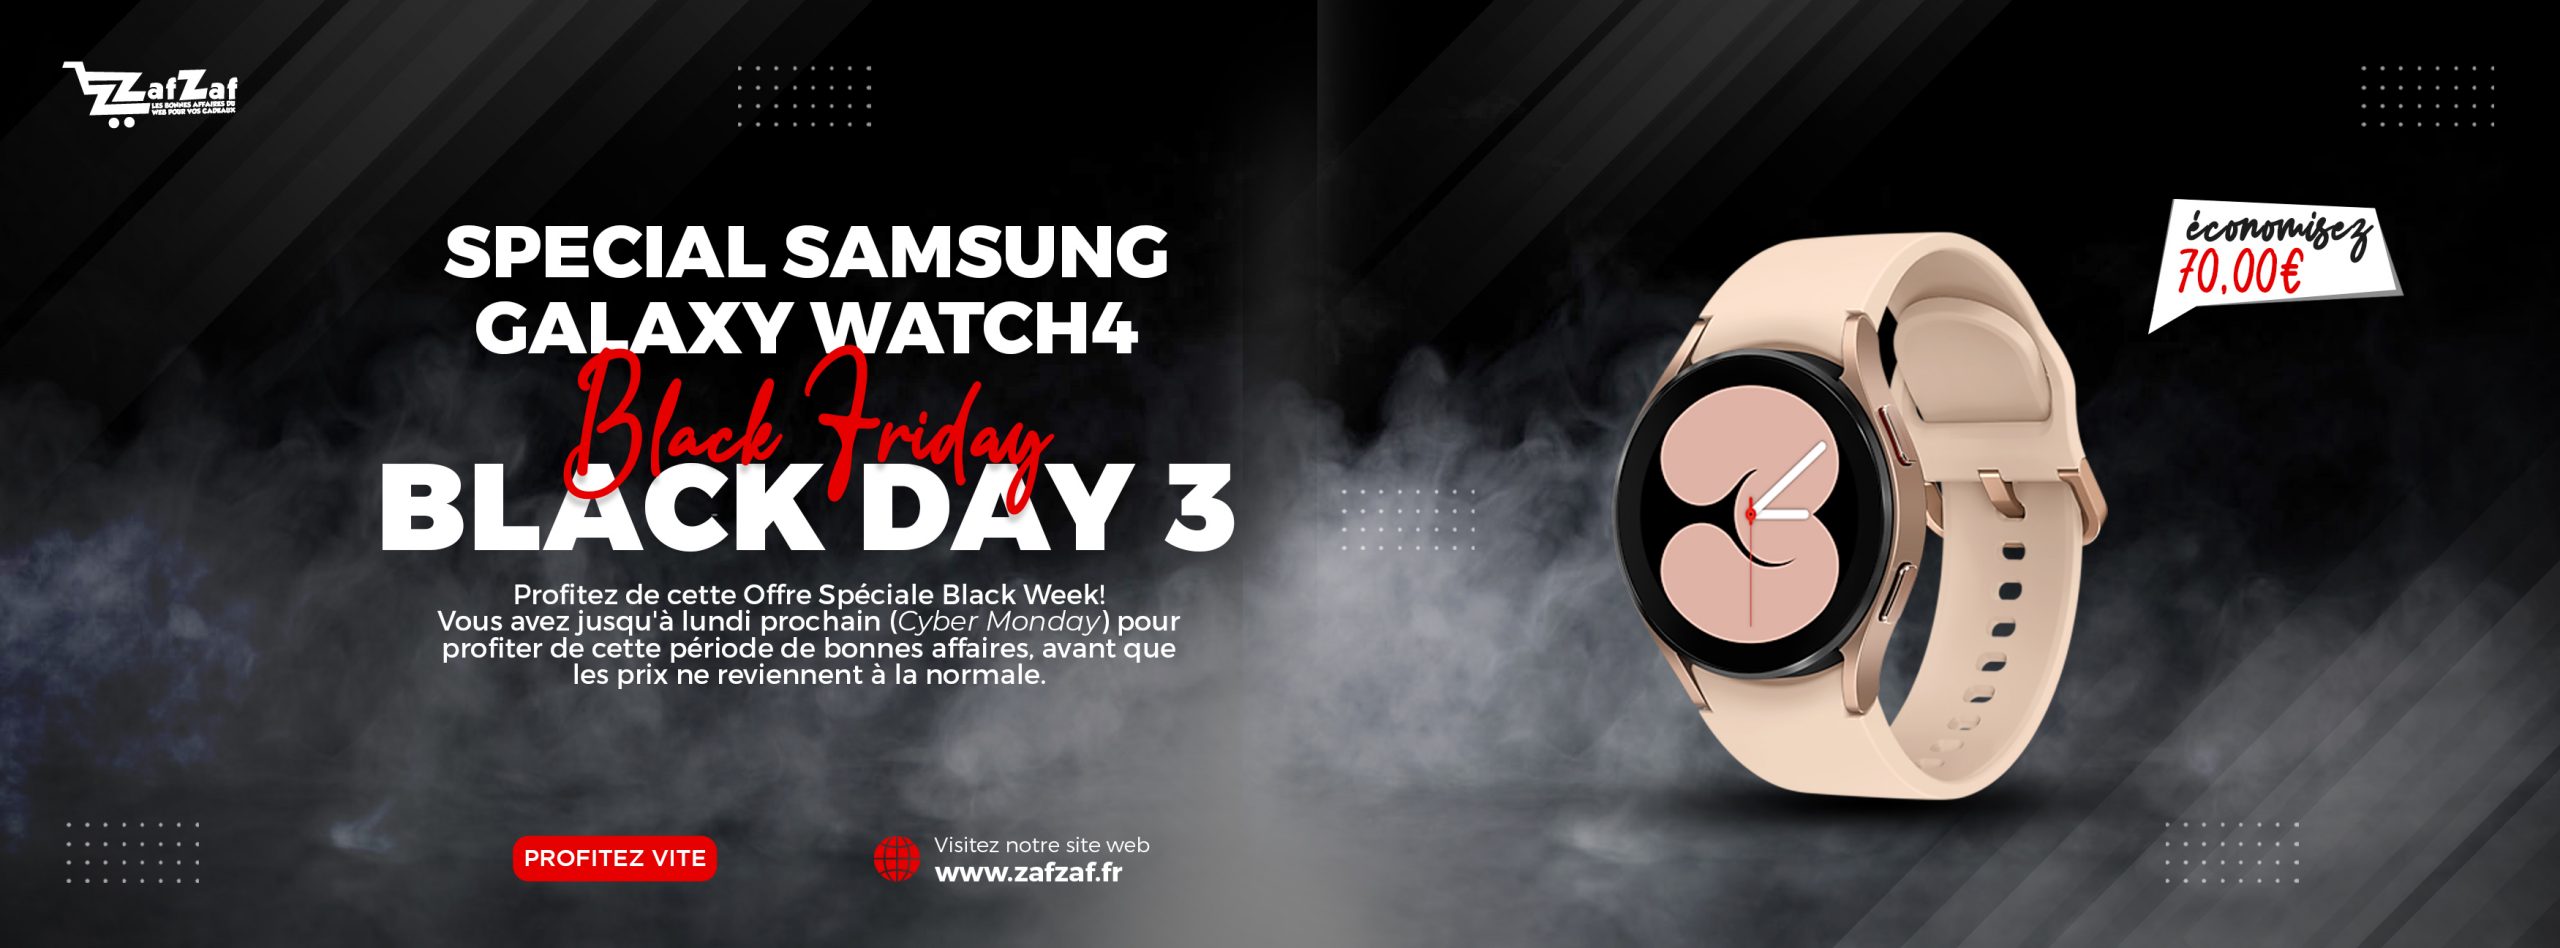 BLACK DAY 3 - Samsung Galaxy Watch4 